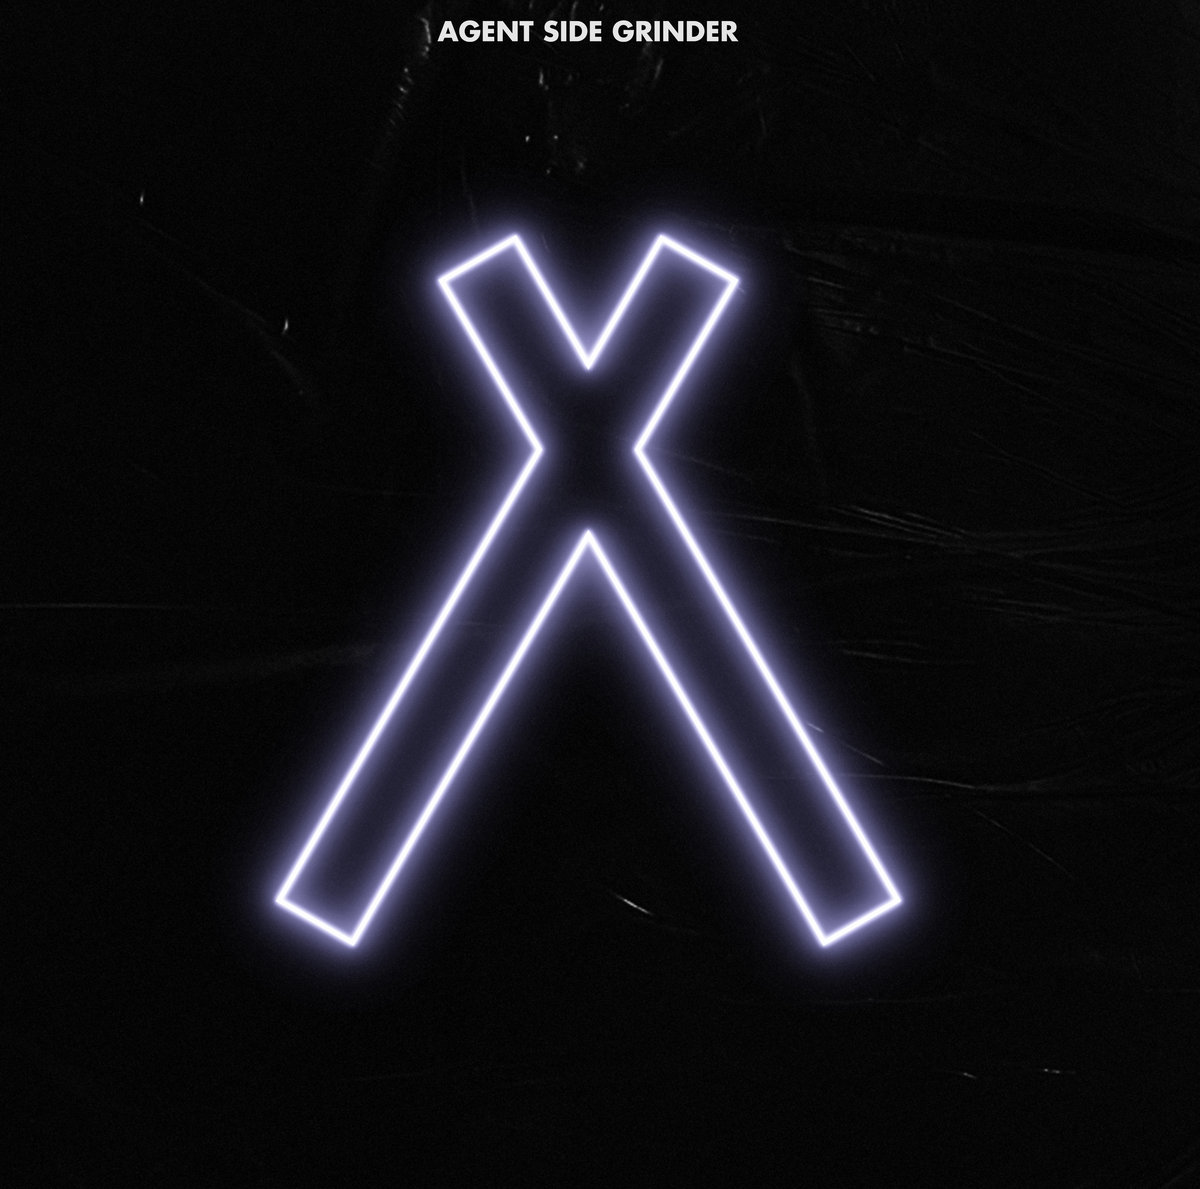 Agent Side Grinder - A/X